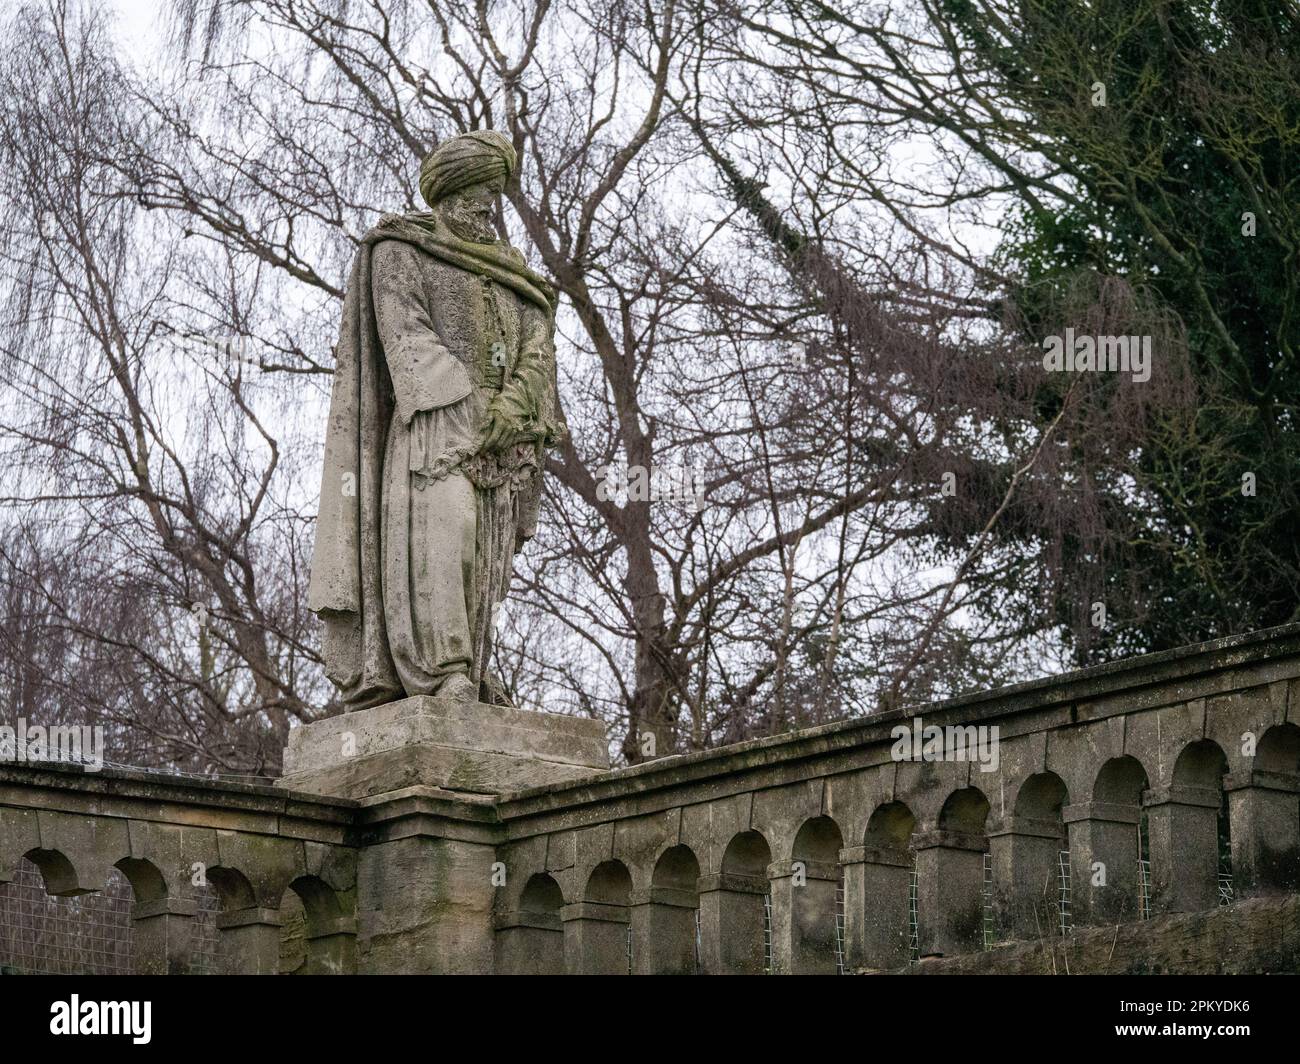 Statue, die die Türkei personifiziert, von Baron Carlo Marochetti im Crystal Palace Park. Für den 1854 eröffneten Crystal Palace in Sydenham. Stockfoto